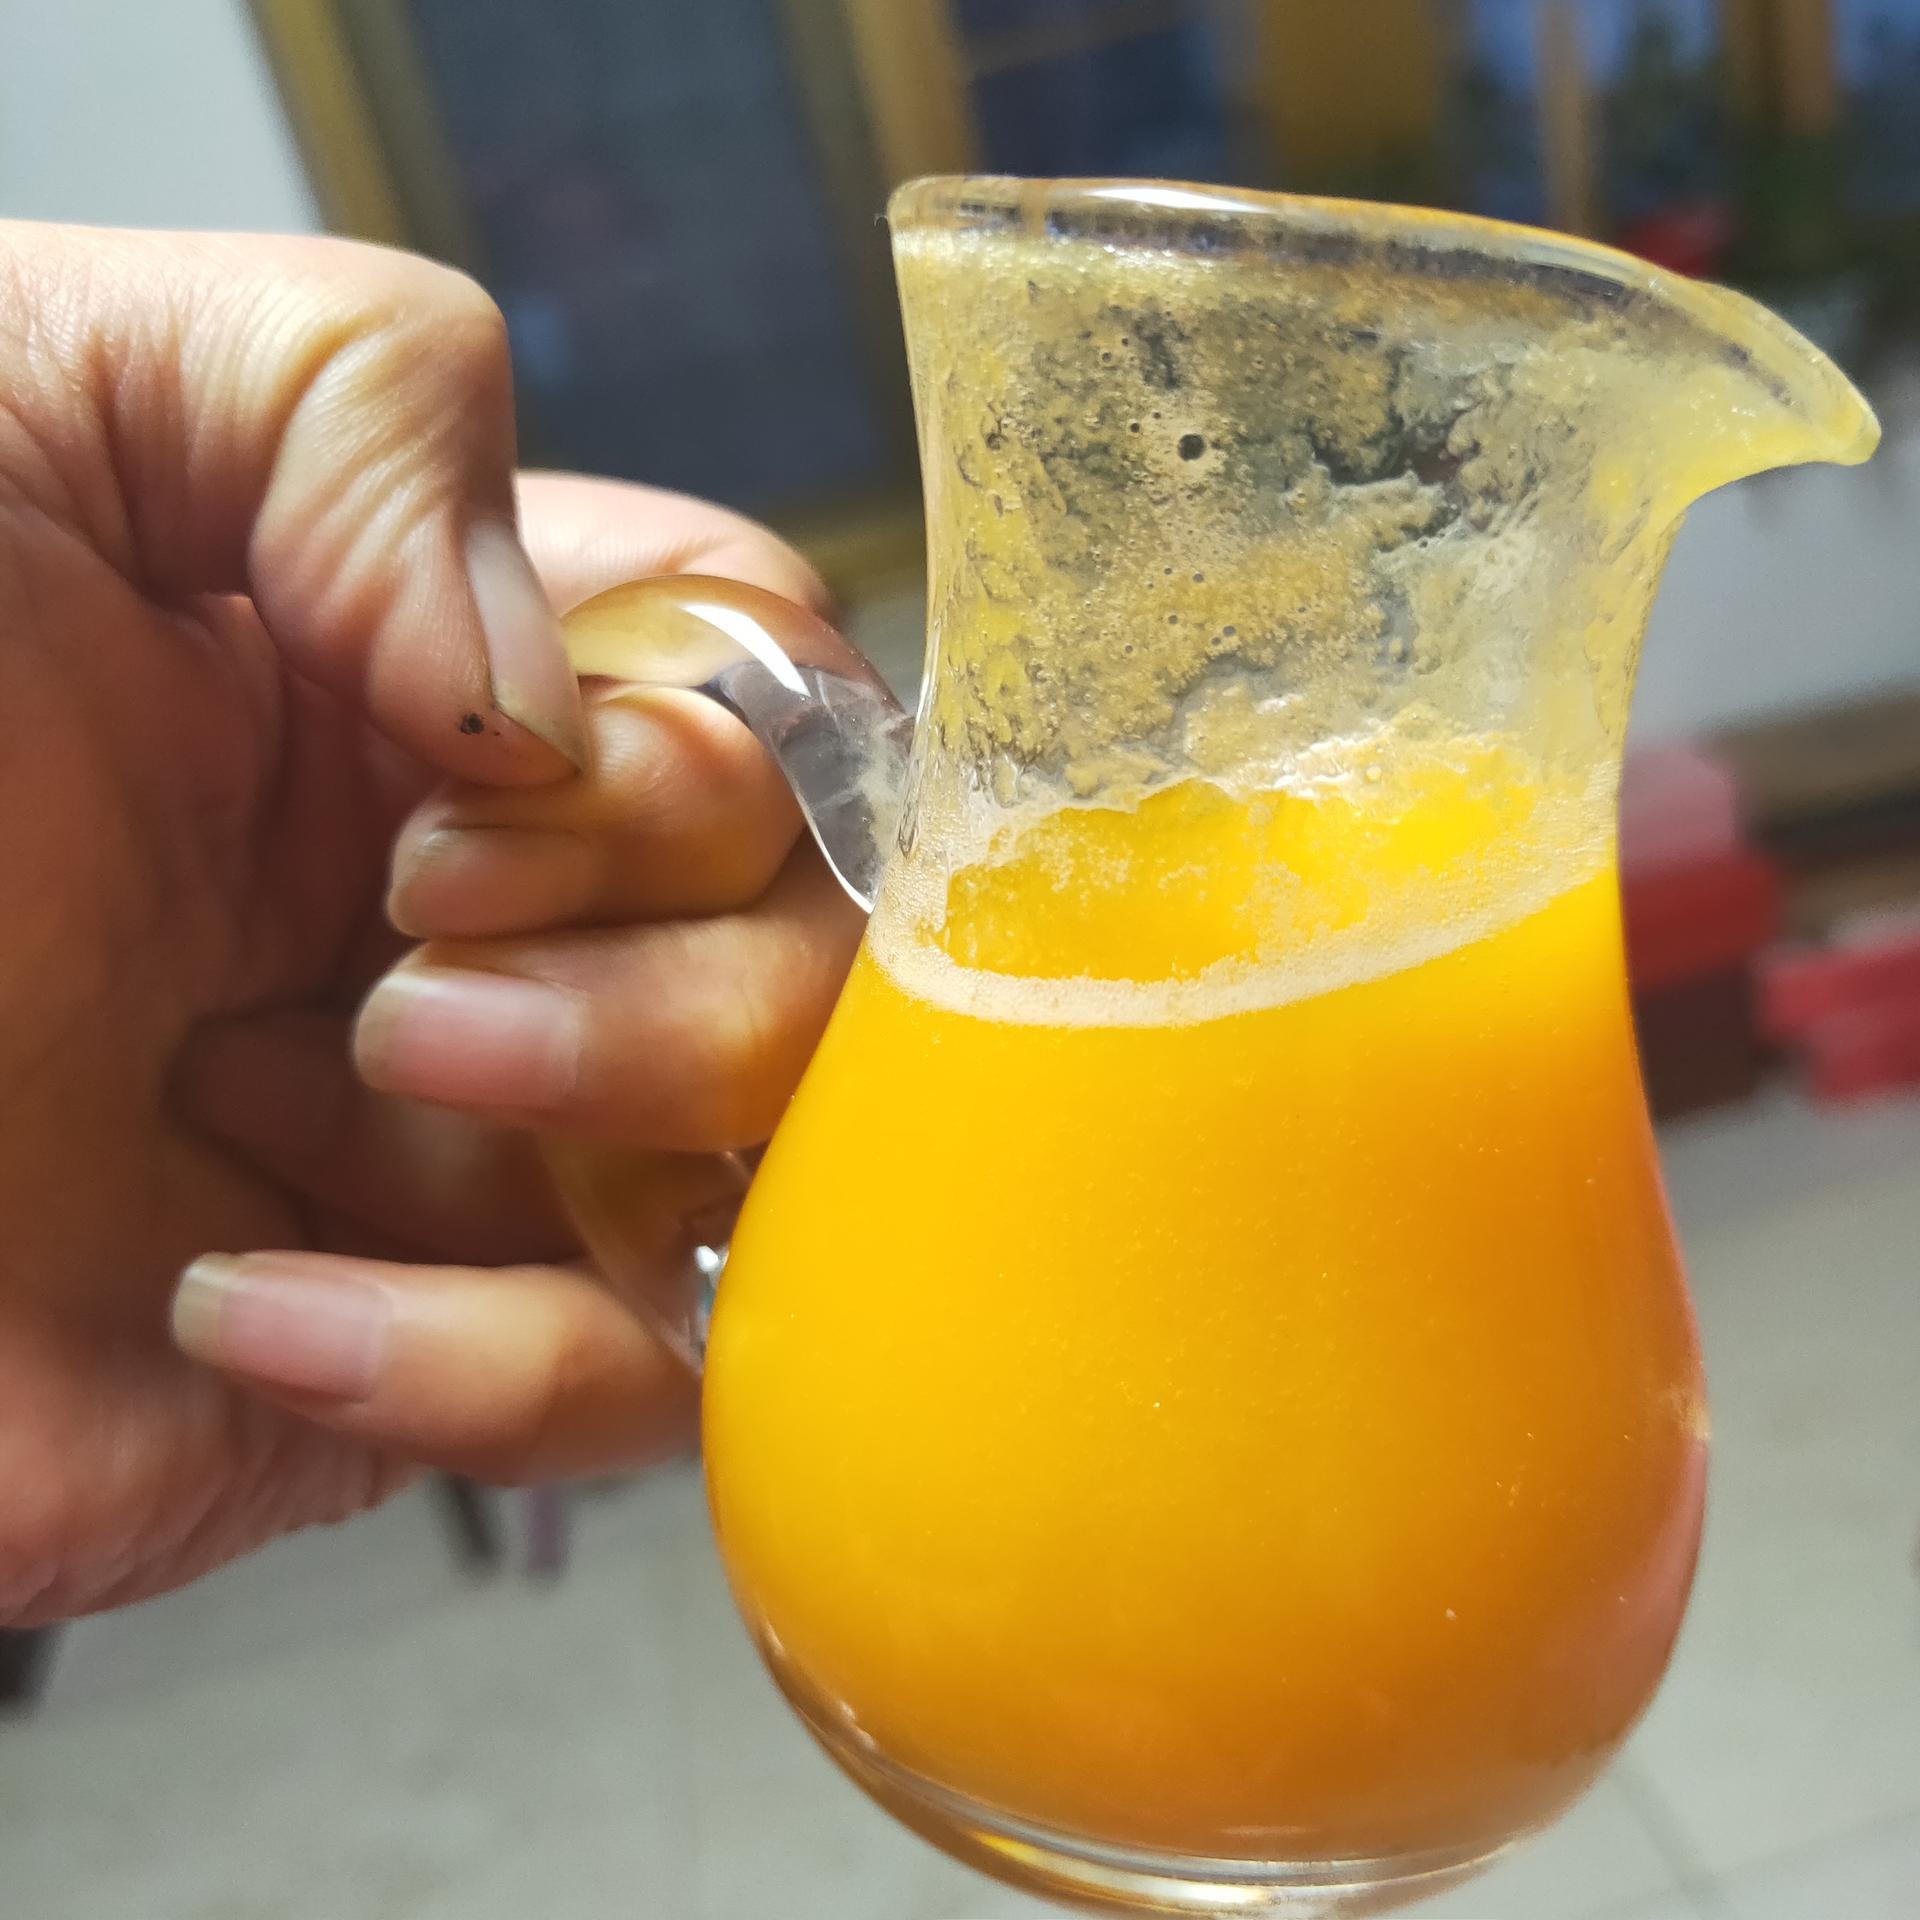 芒果浓缩汁5倍浓缩 芒果汁 原浆 芒果青汁  芒果果粉